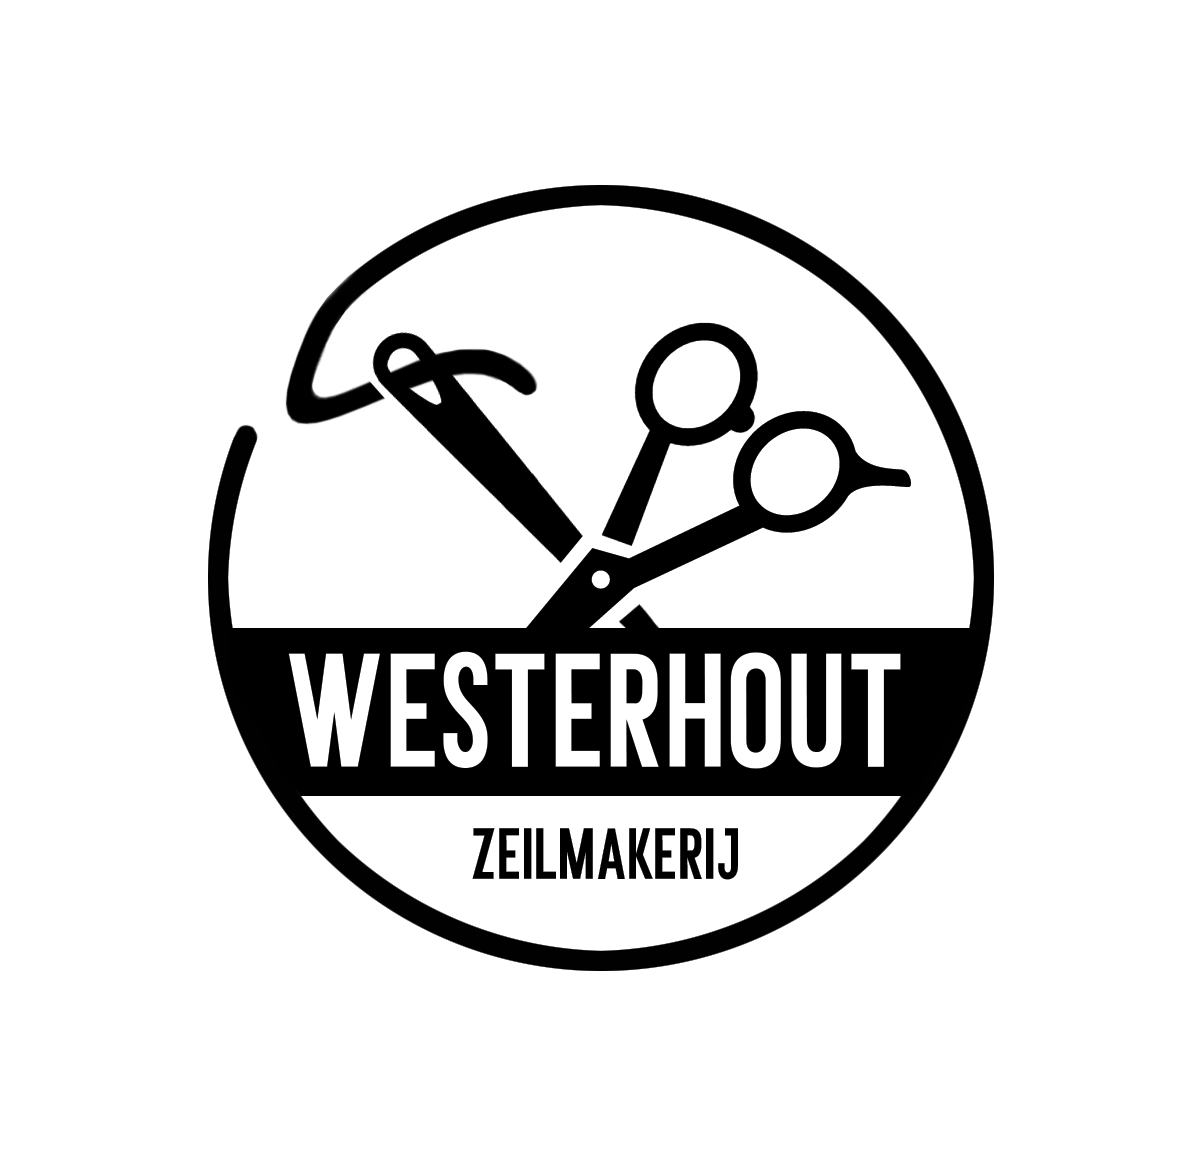 Zeilmakerij Westerhout